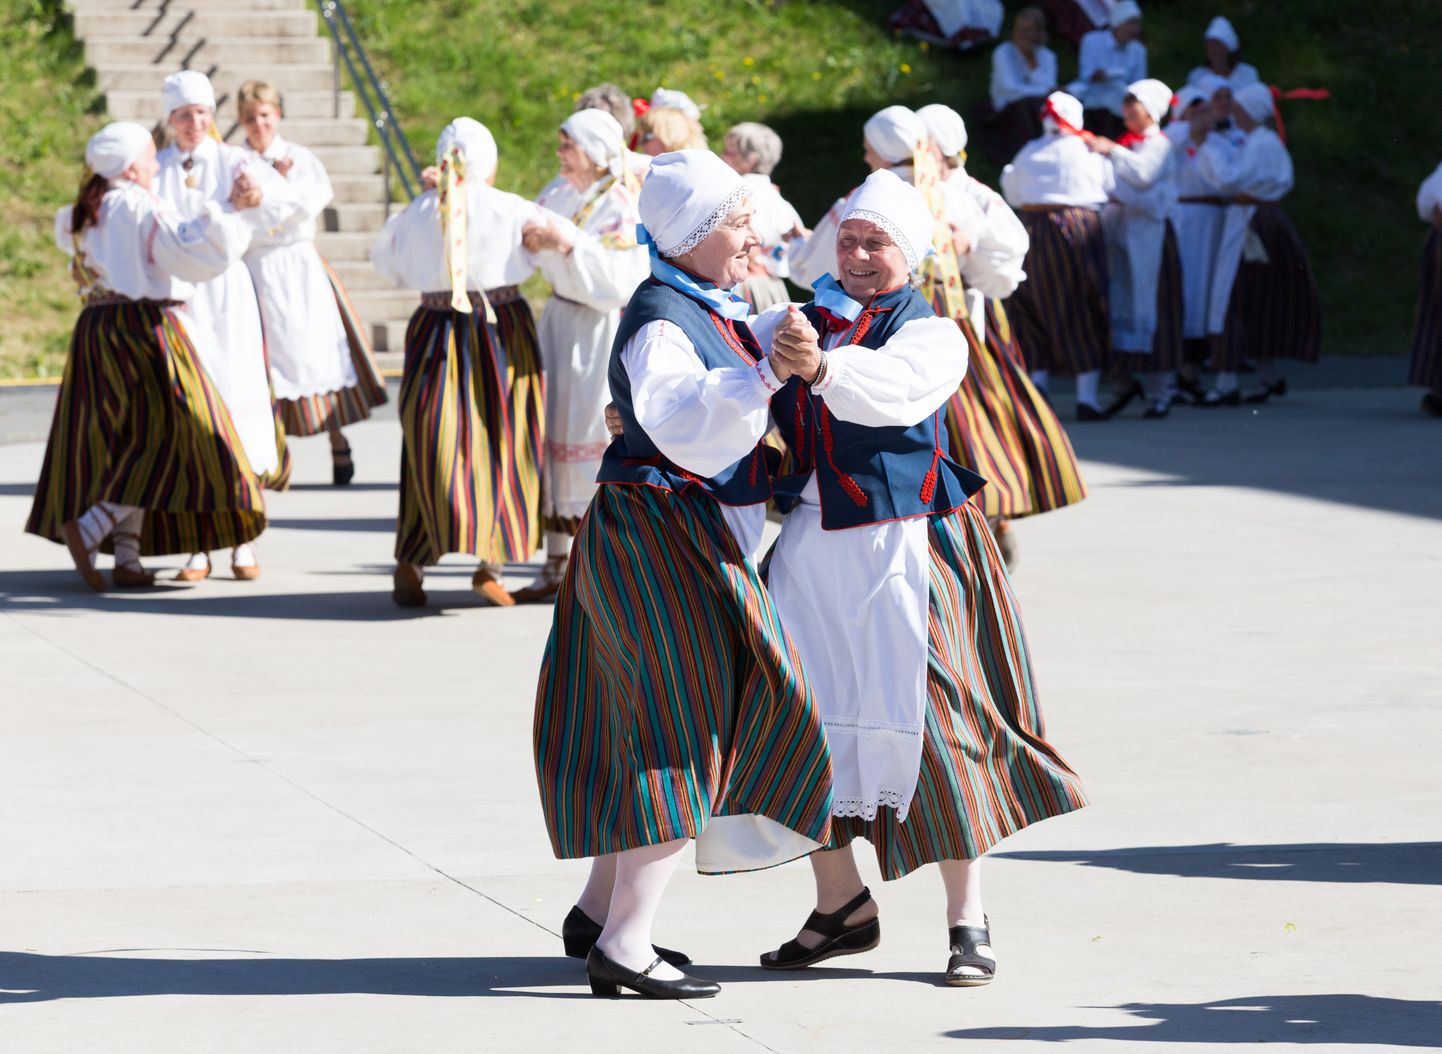 Lõuna-Eesti memme-taadi tantsupidu